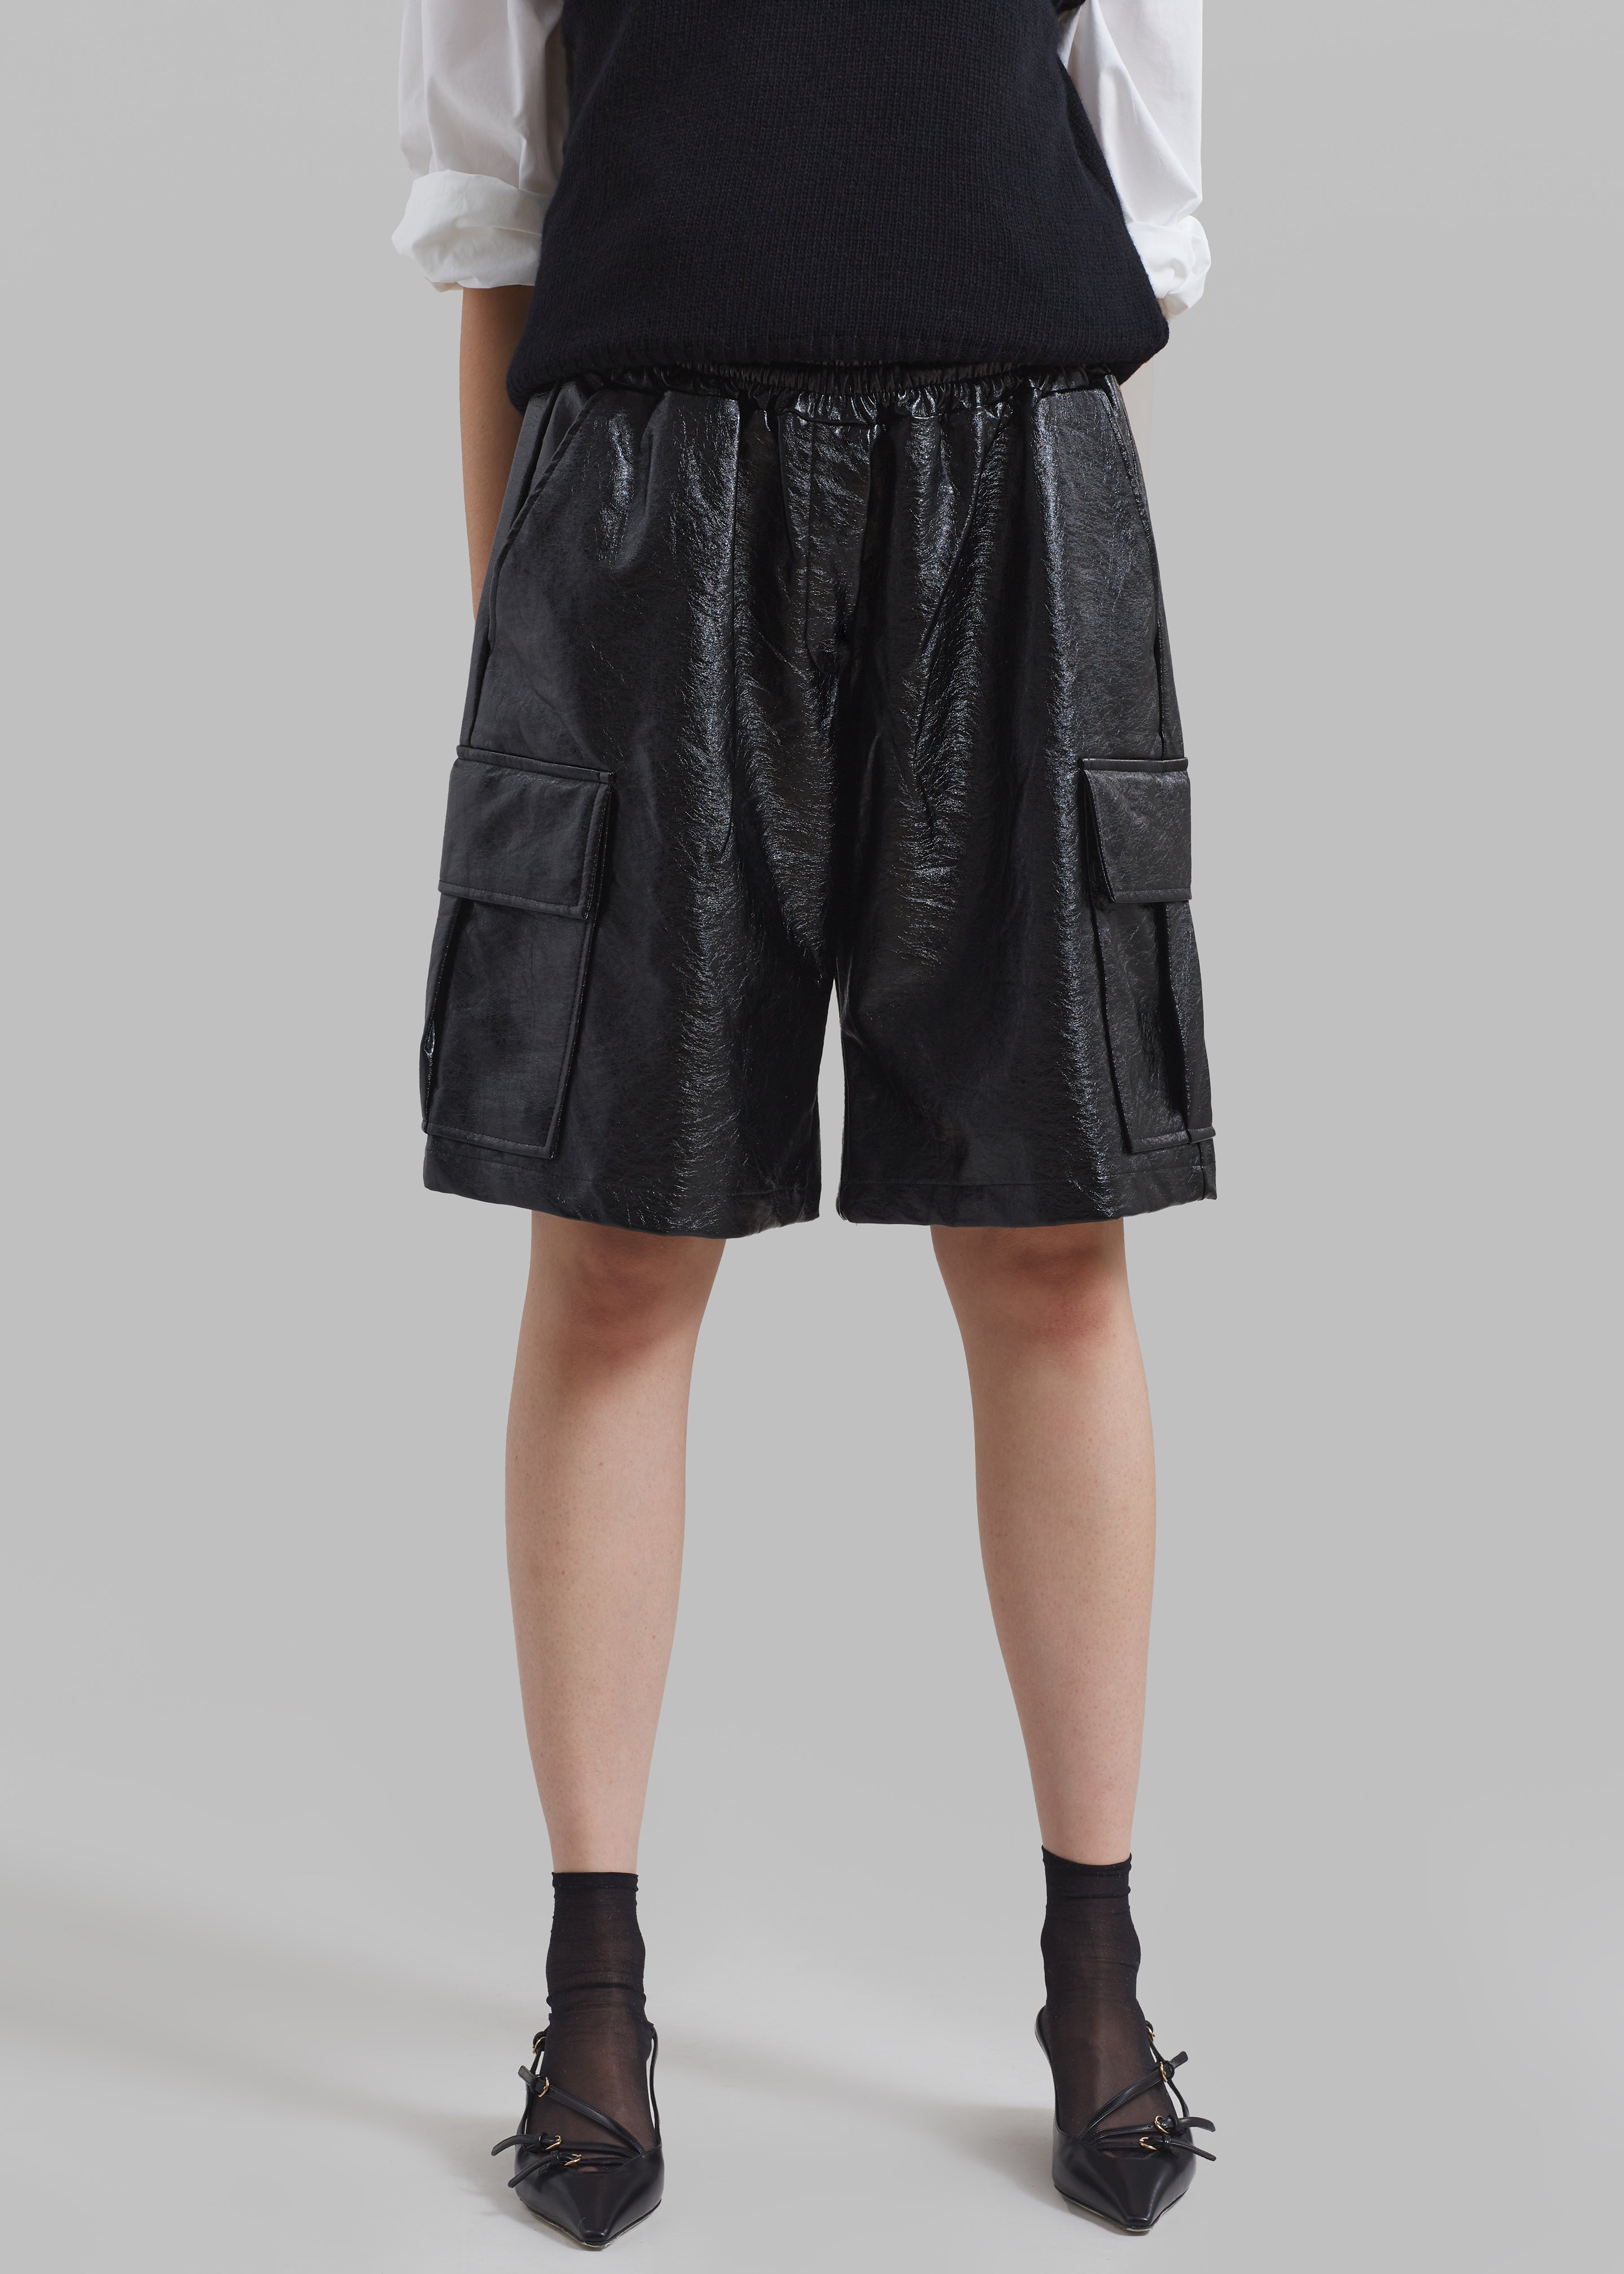 Hariette Faux Leather Shorts - Black - 4